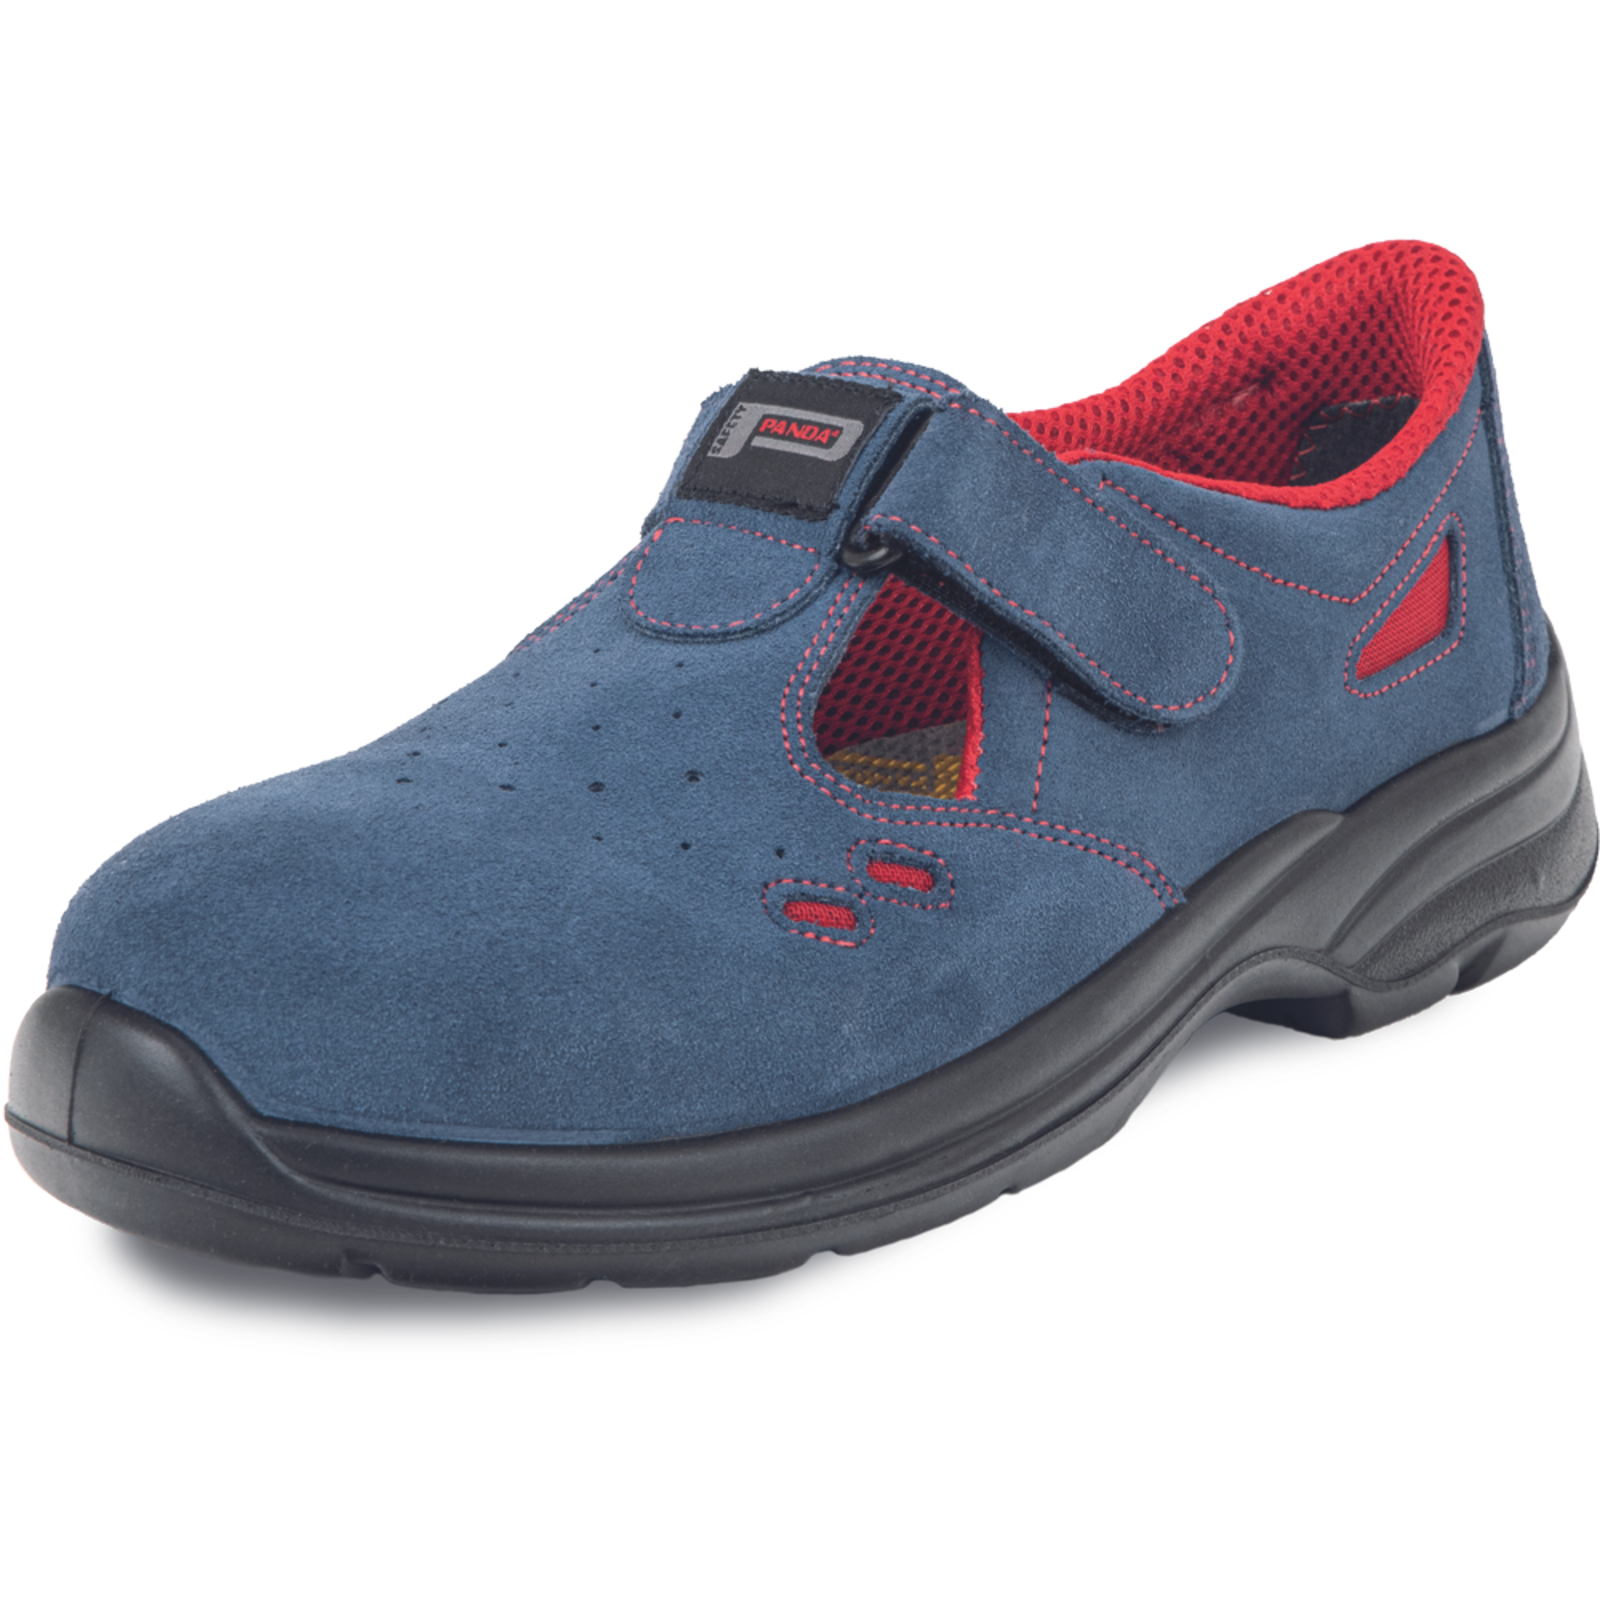 Pracovné bezpečnostné sandále Panda Ringo MF S1 SRC - veľkosť: 40, farba: modrá/červená